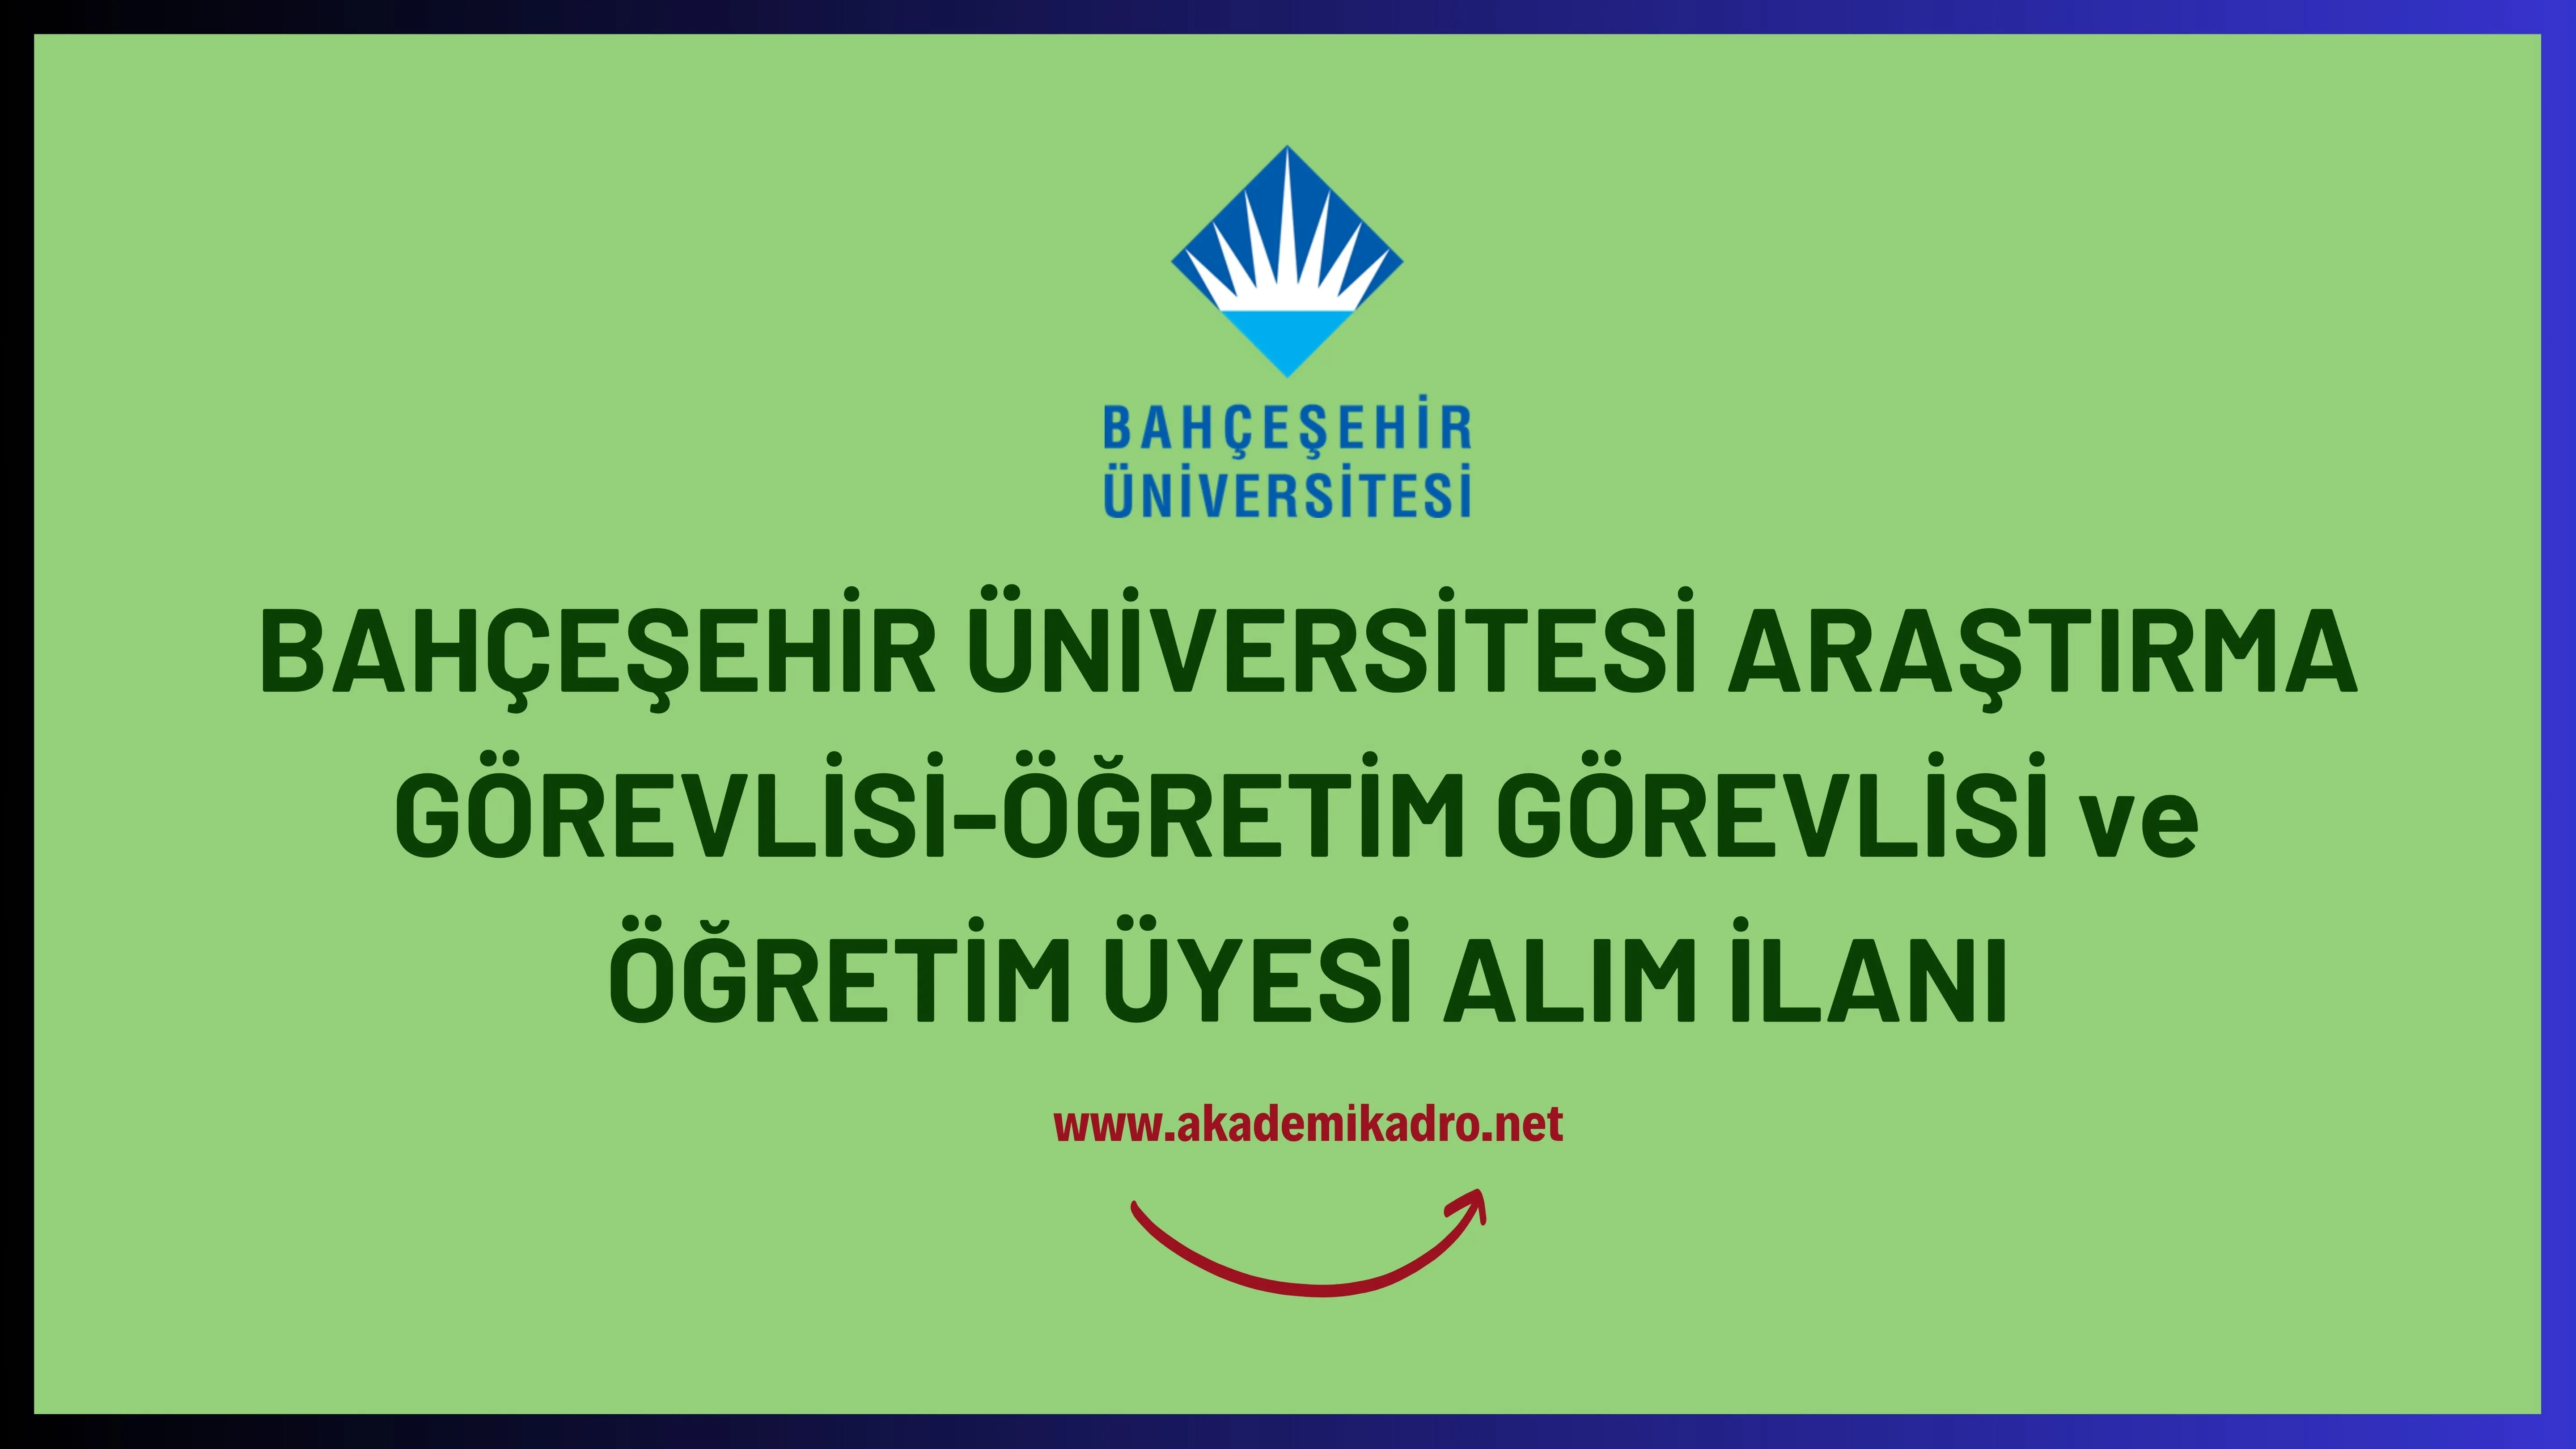 Bahçeşehir Üniversitesi 6 Öğretim görevlisi ve 53 Öğretim üyesi alacak.